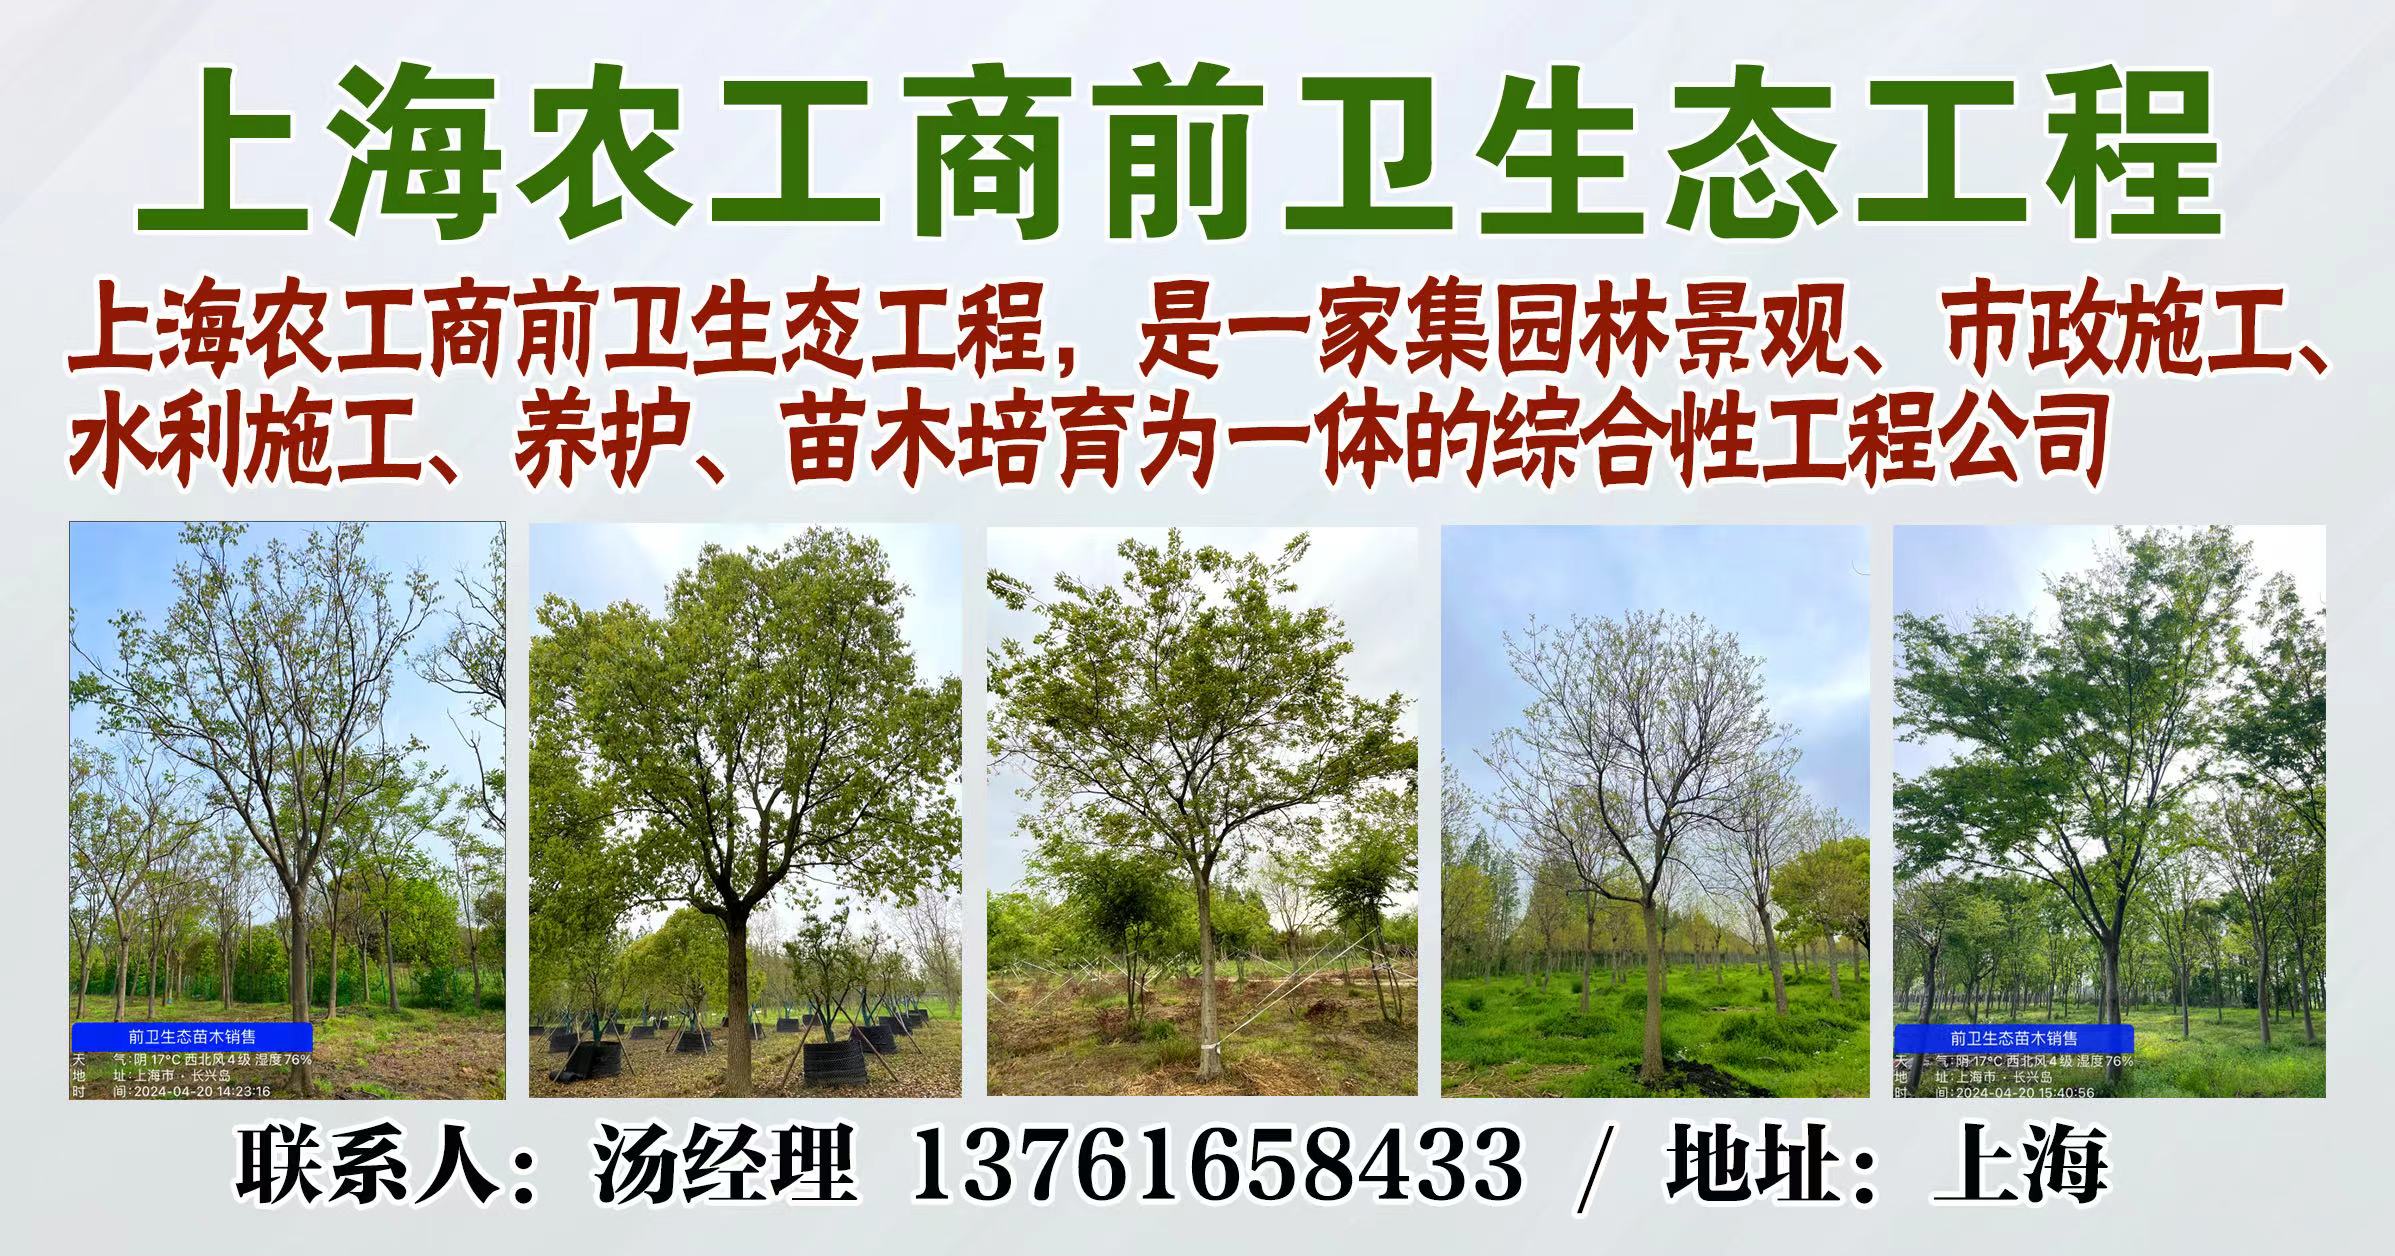 上海农工商前卫生态工程